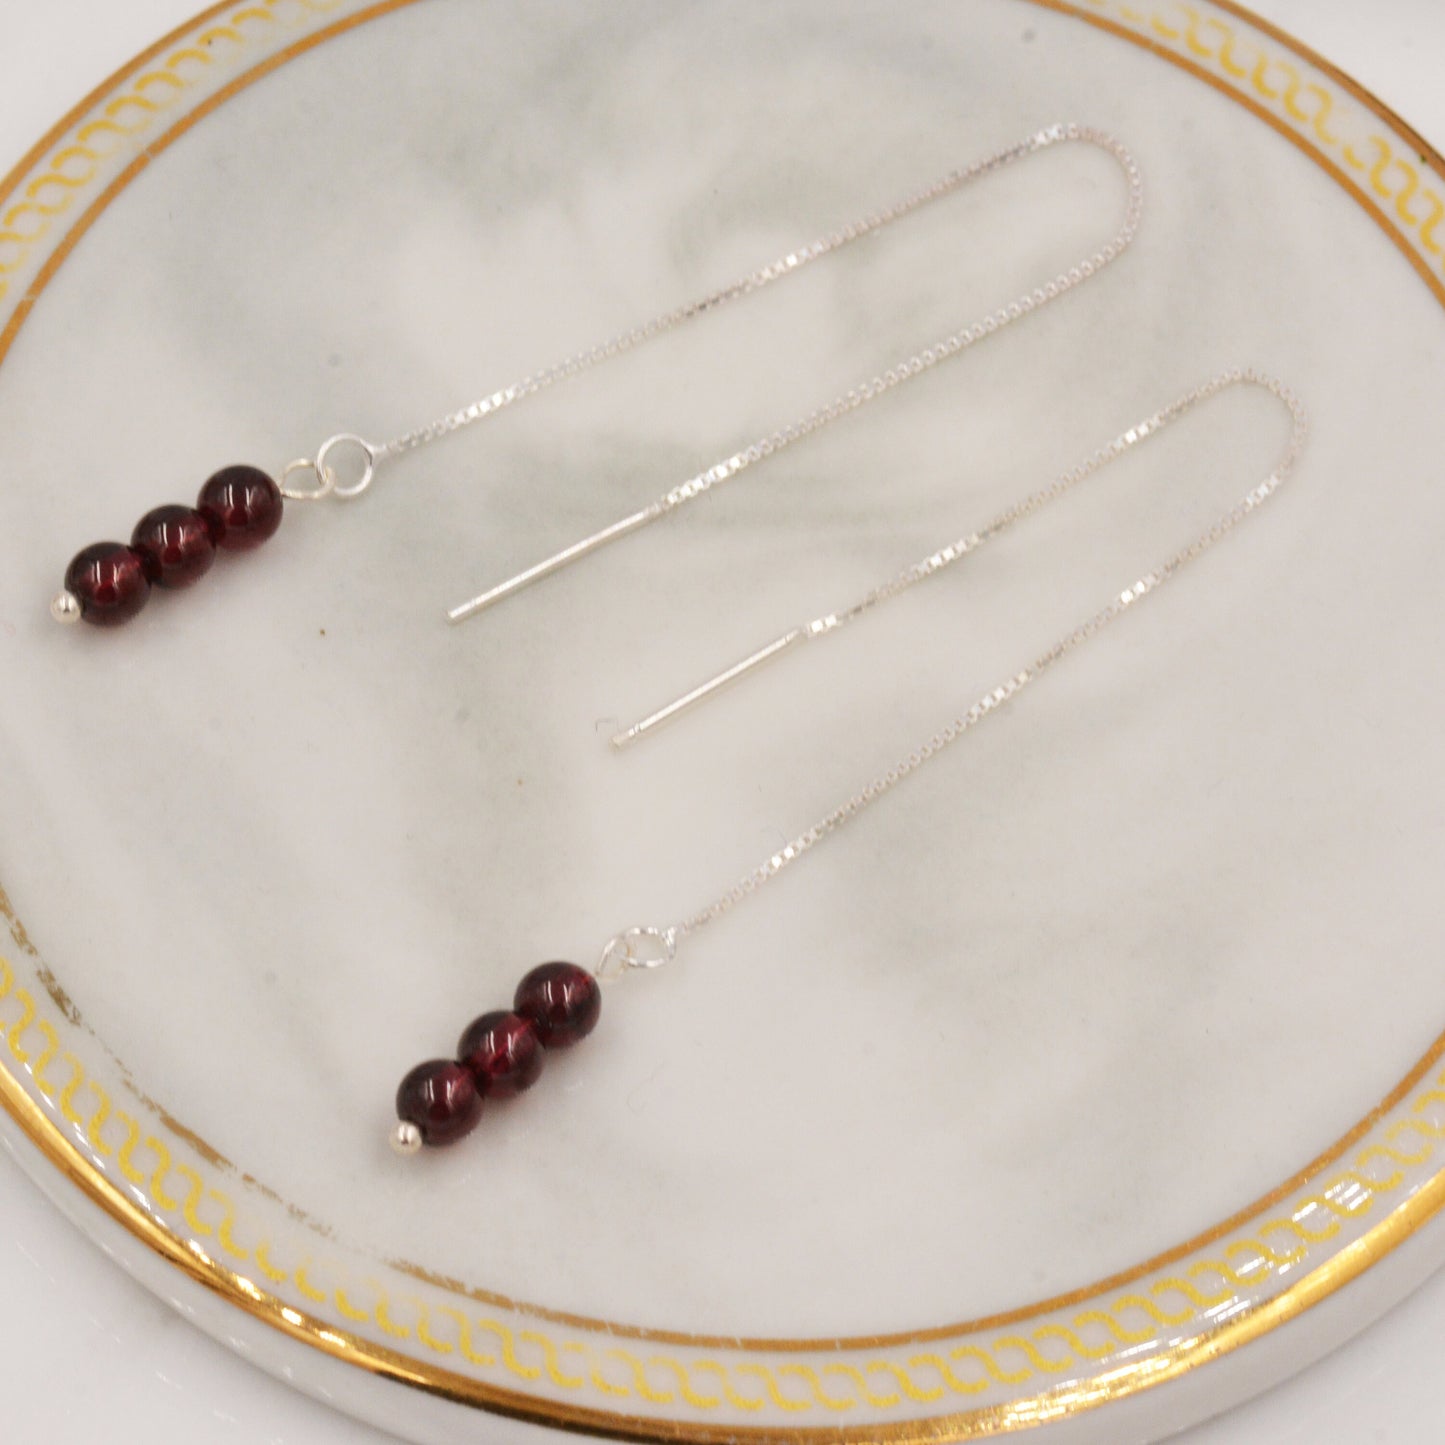 Genuine Garnet Gemstone Ear Threaders in Sterling Silver, Three Beads Threader Earrings, Ear Jacket. Dark Red Garnet Crystals